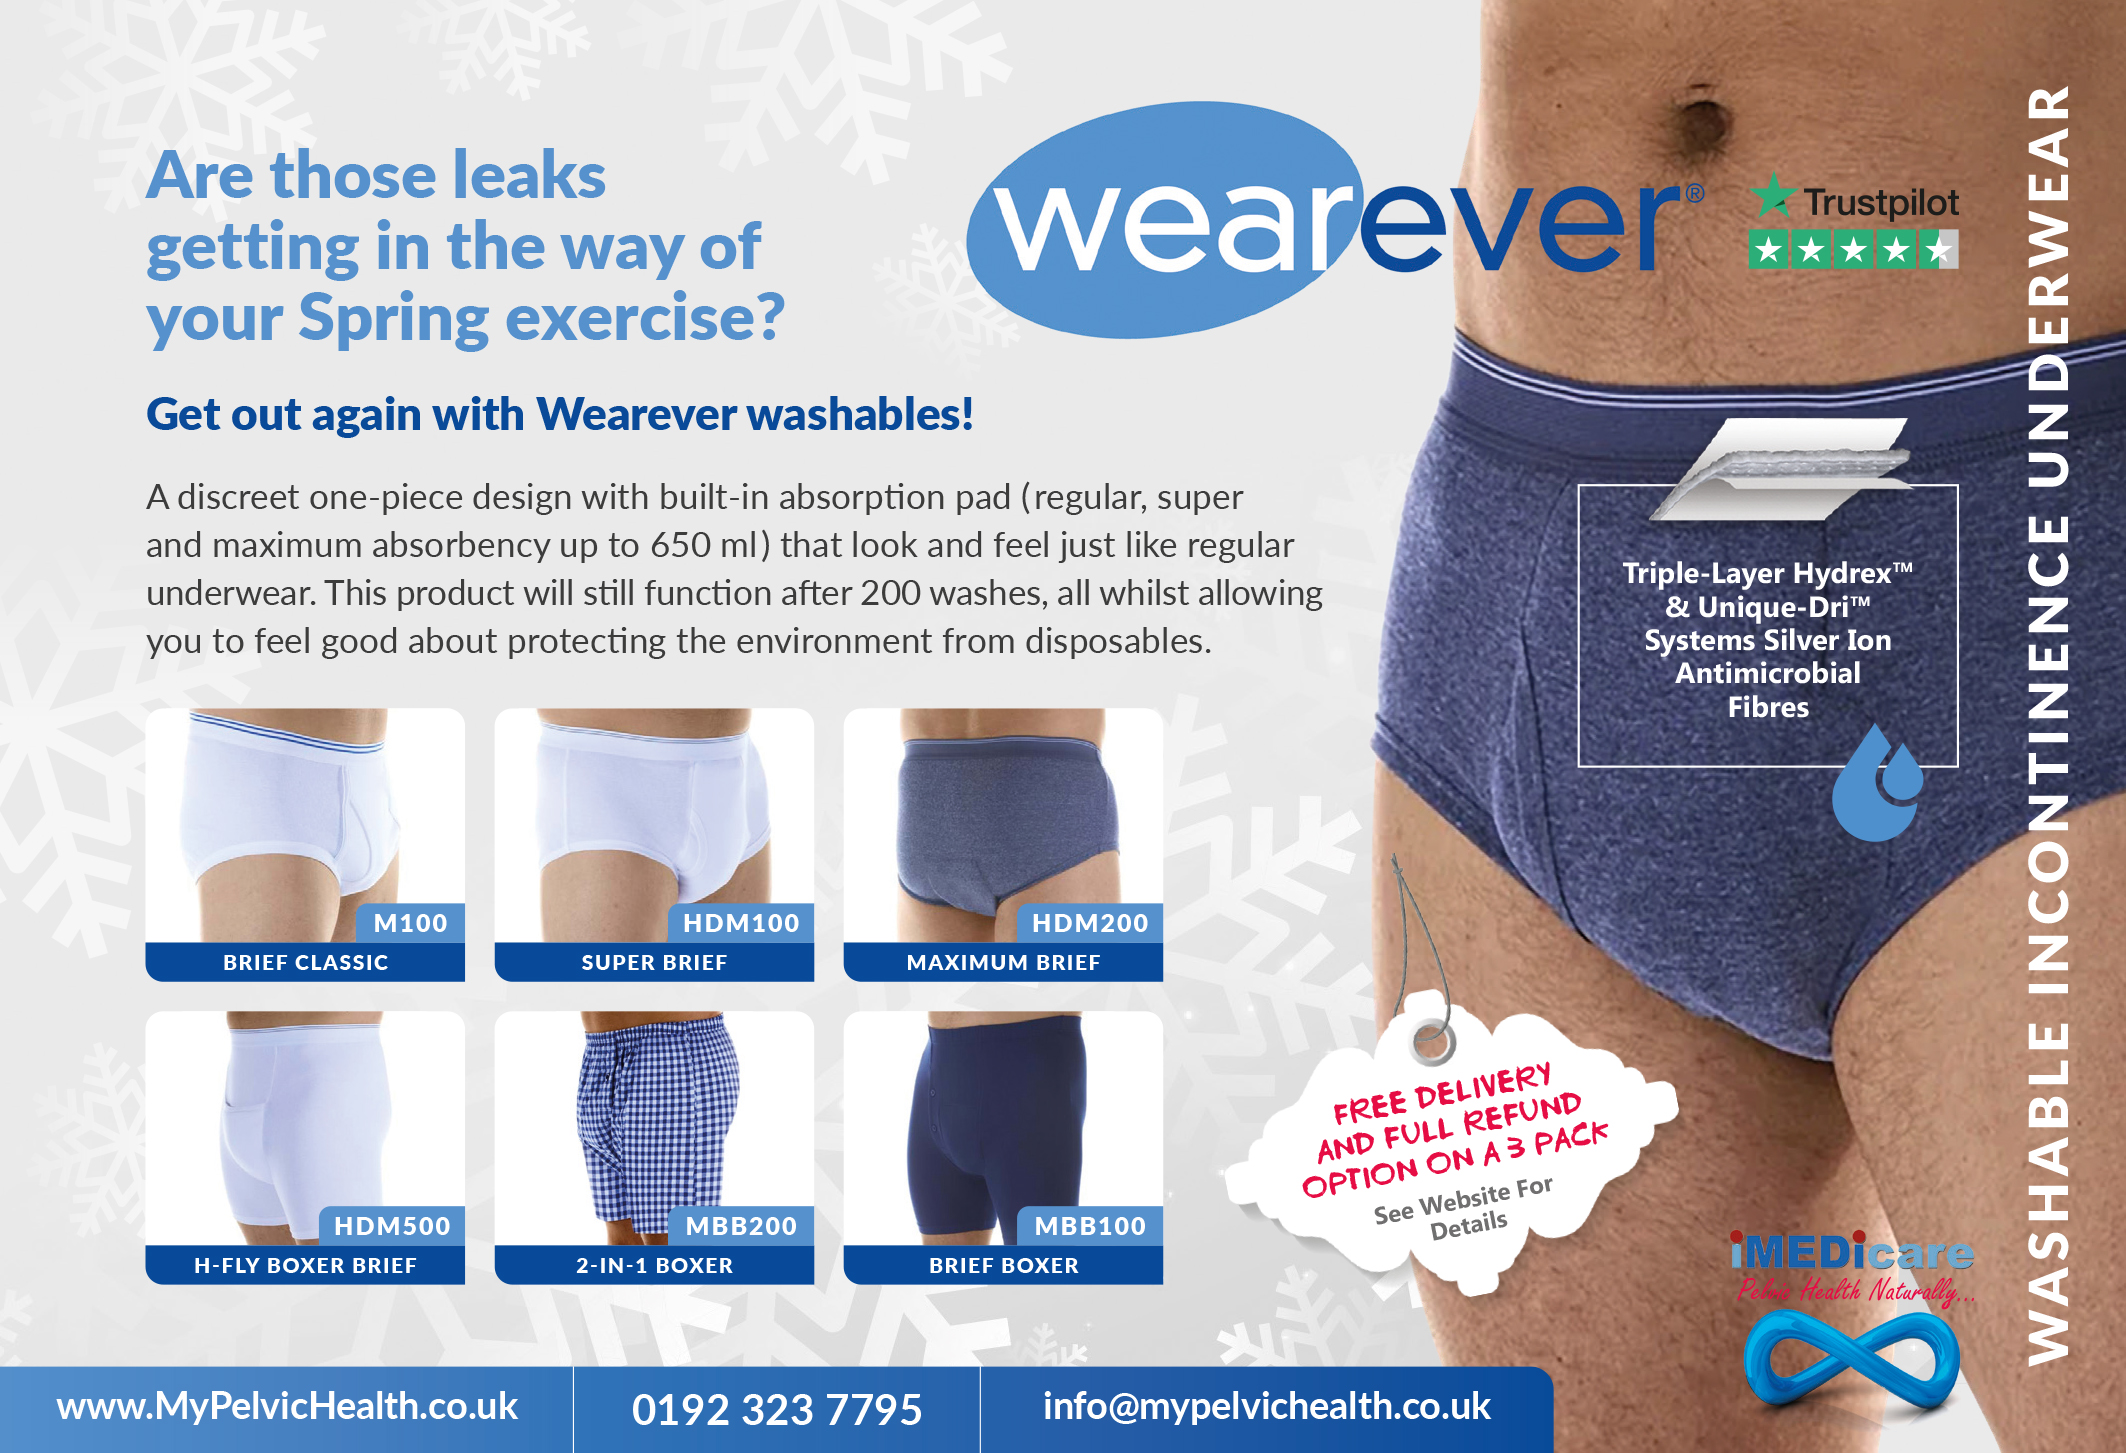 Wearever for Men - My Pelvic Health - iMEDicare UK Ltd